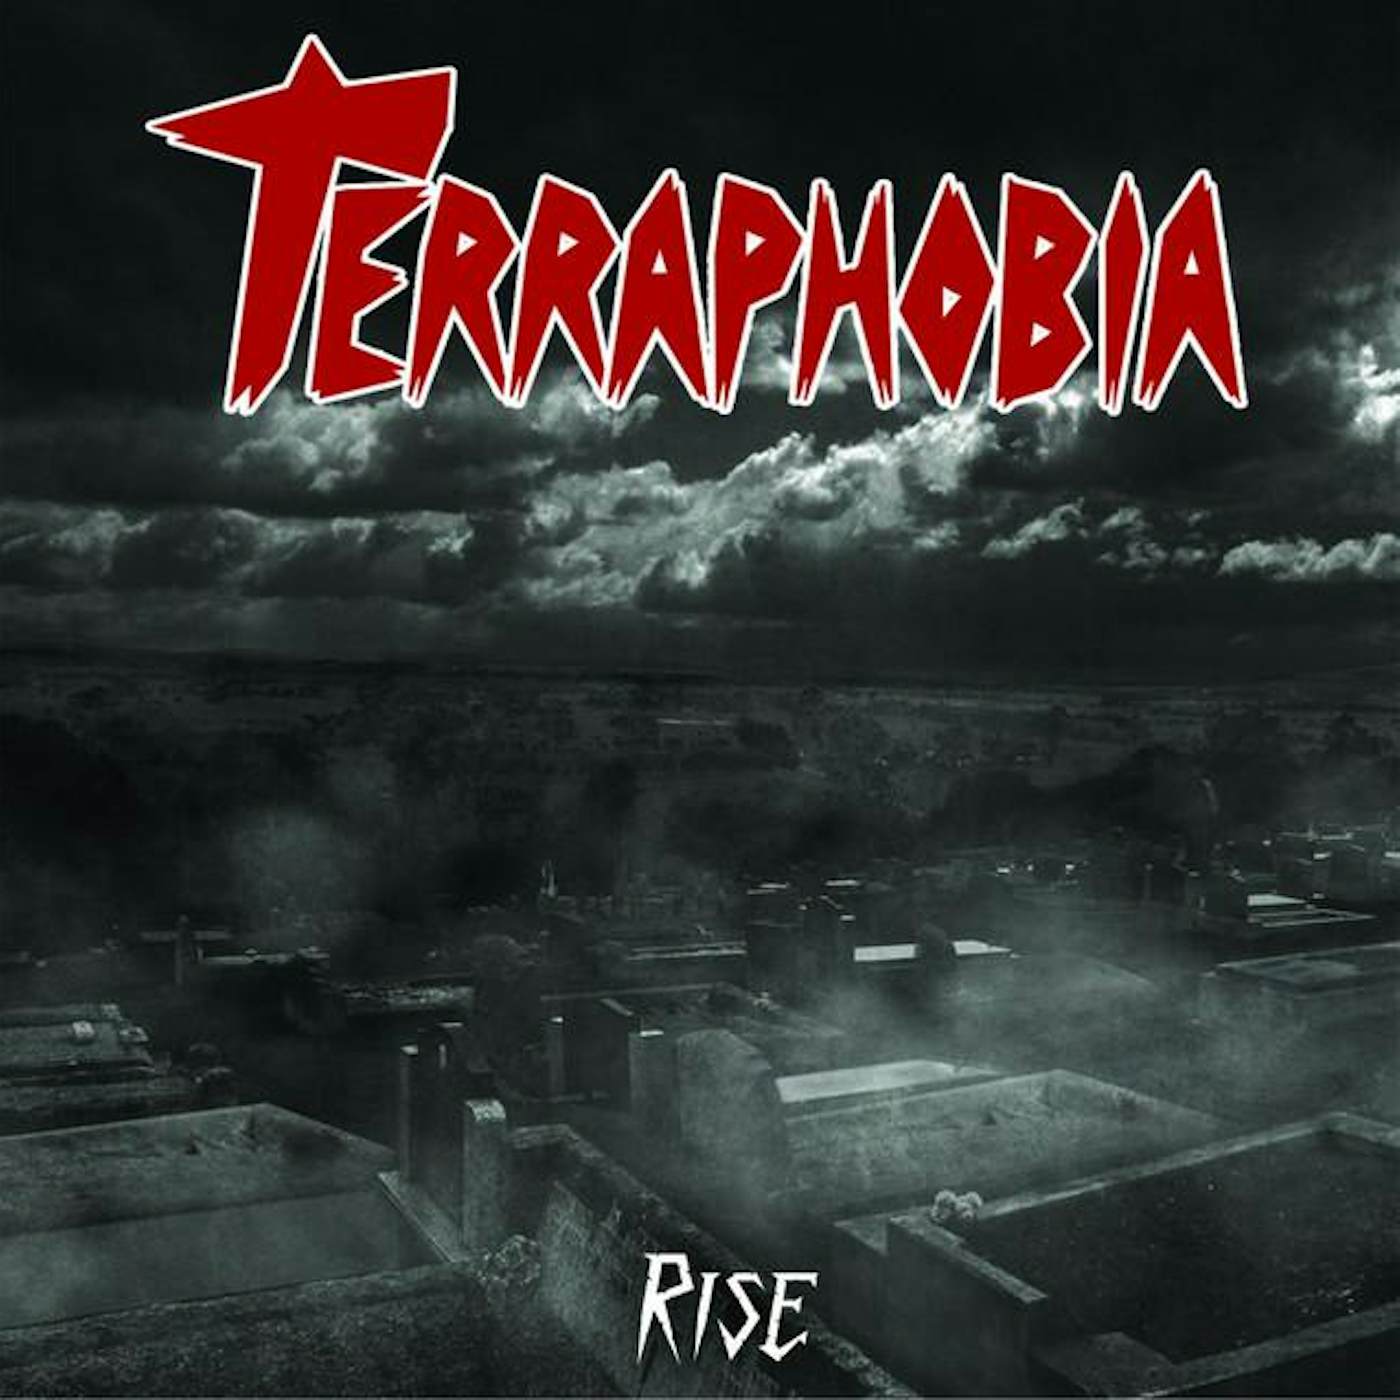 Terraphobia